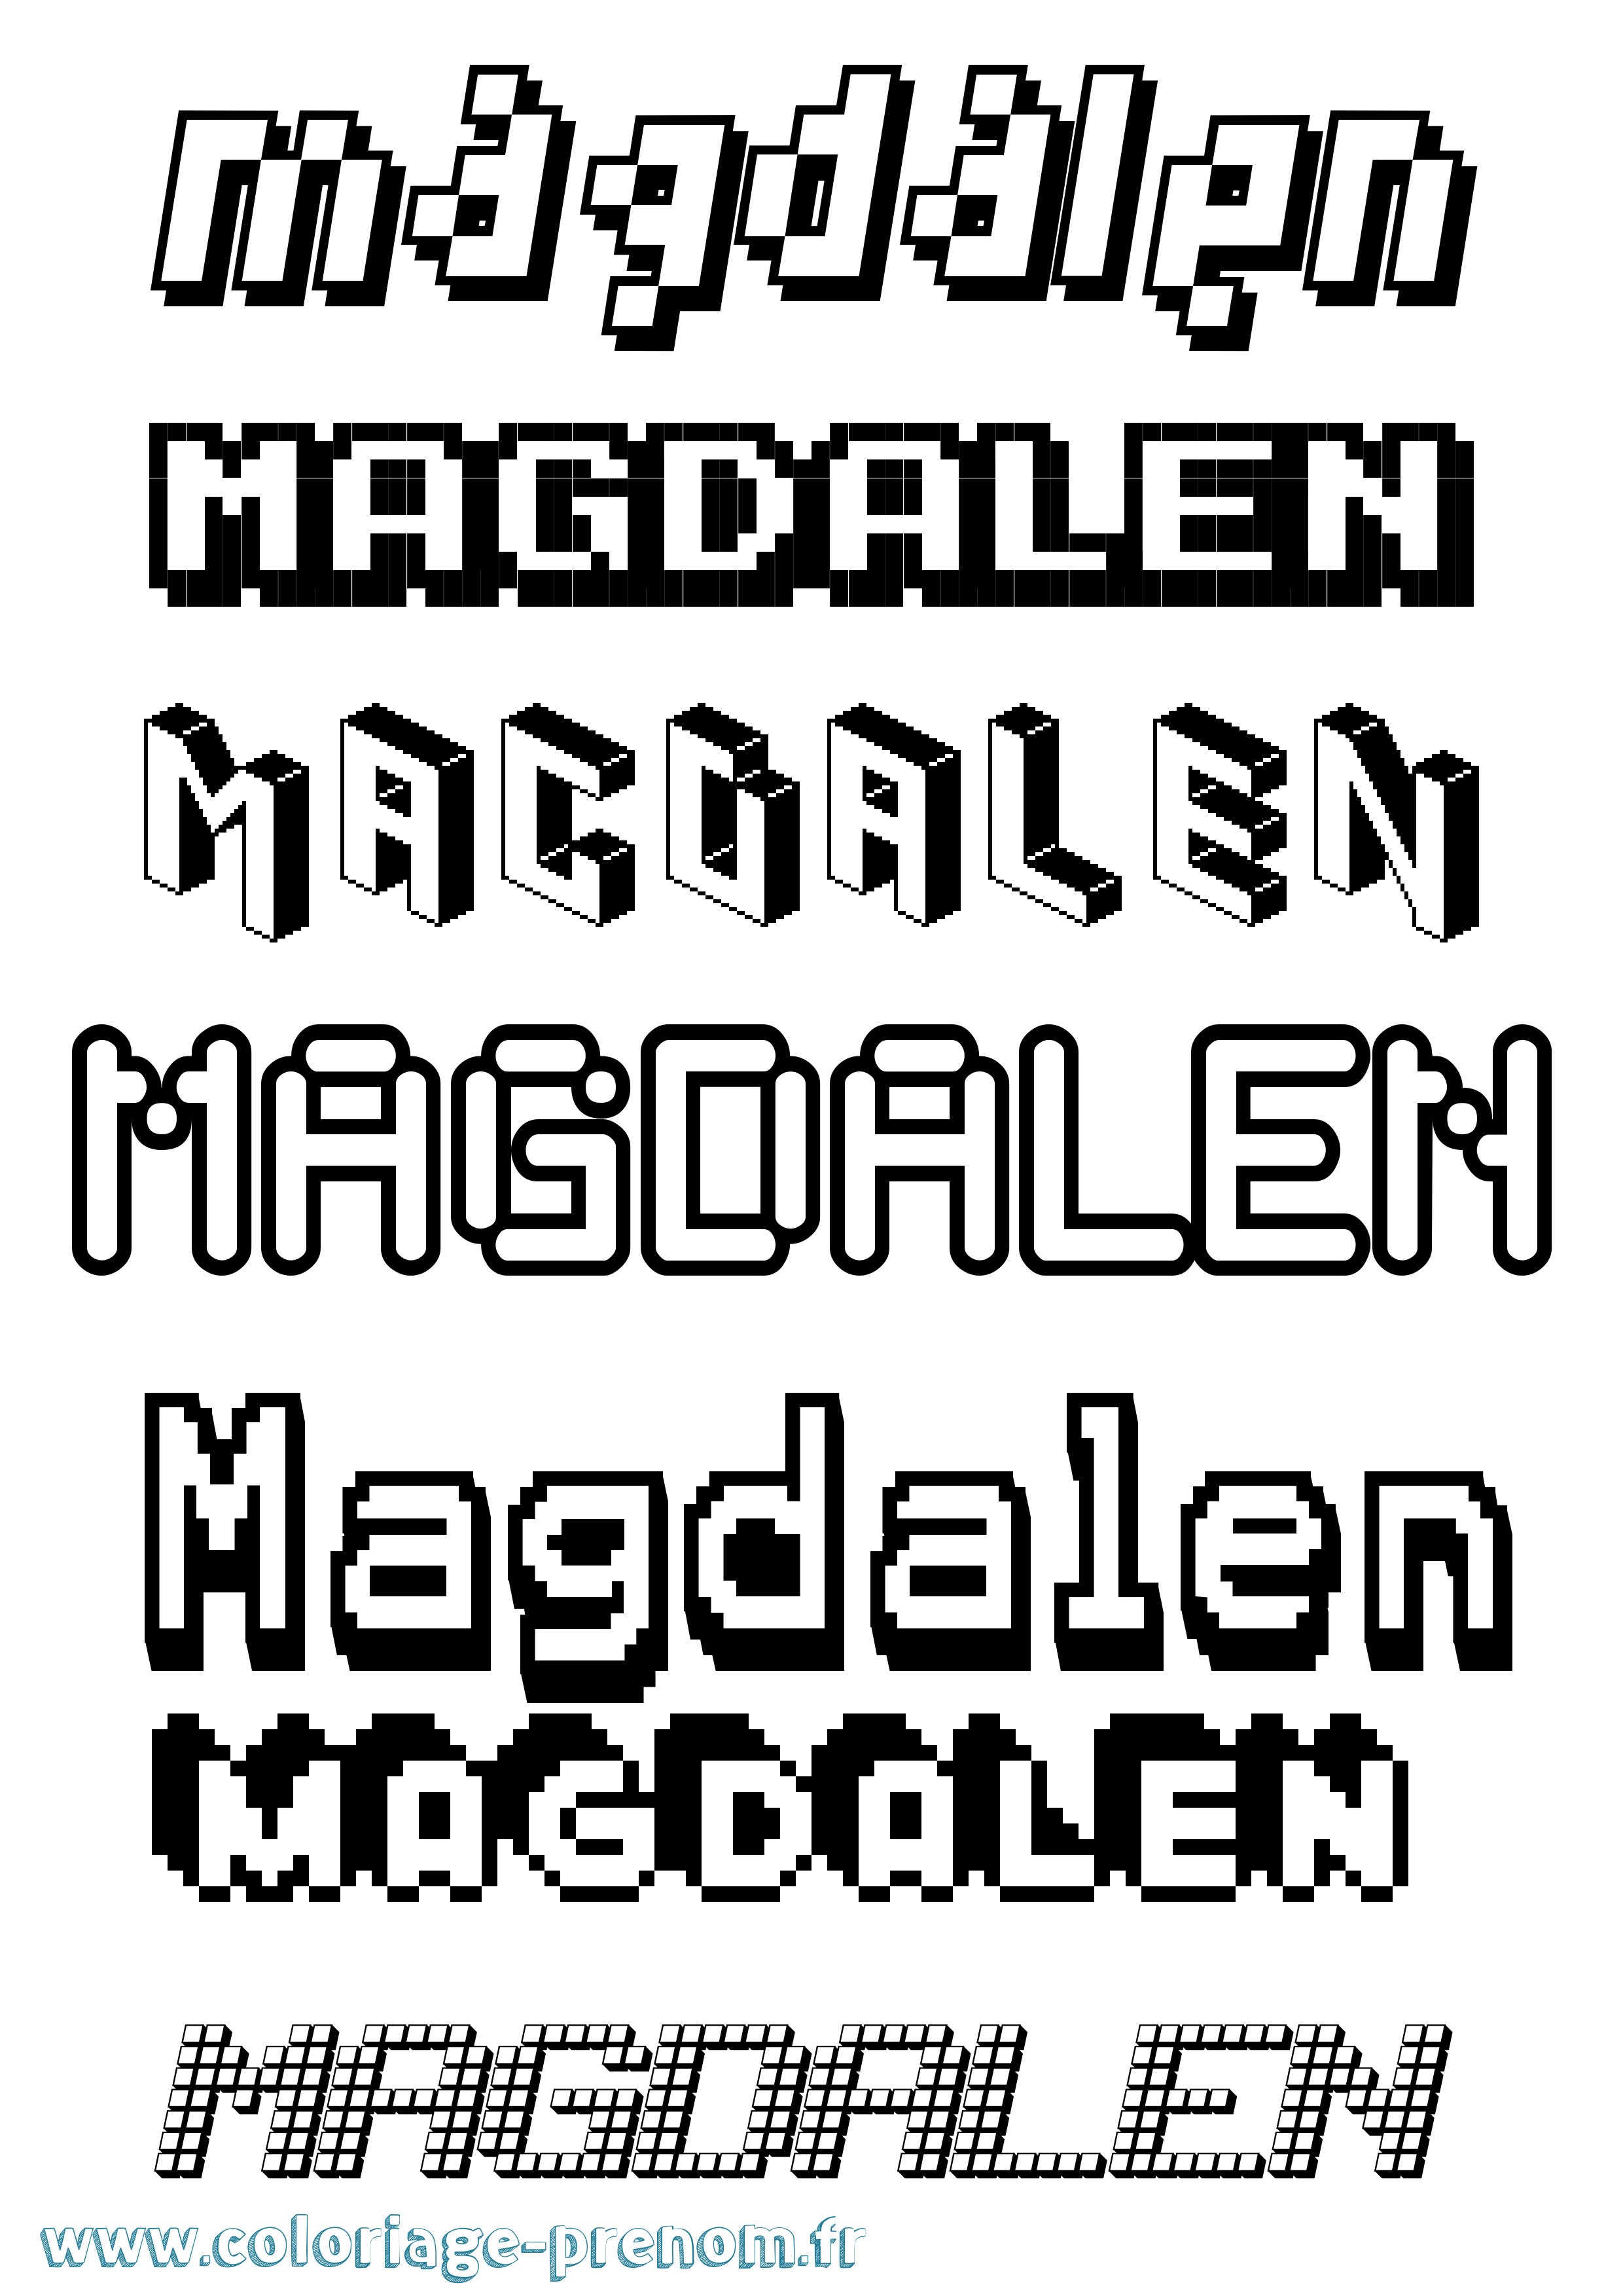 Coloriage prénom Magdalen Pixel